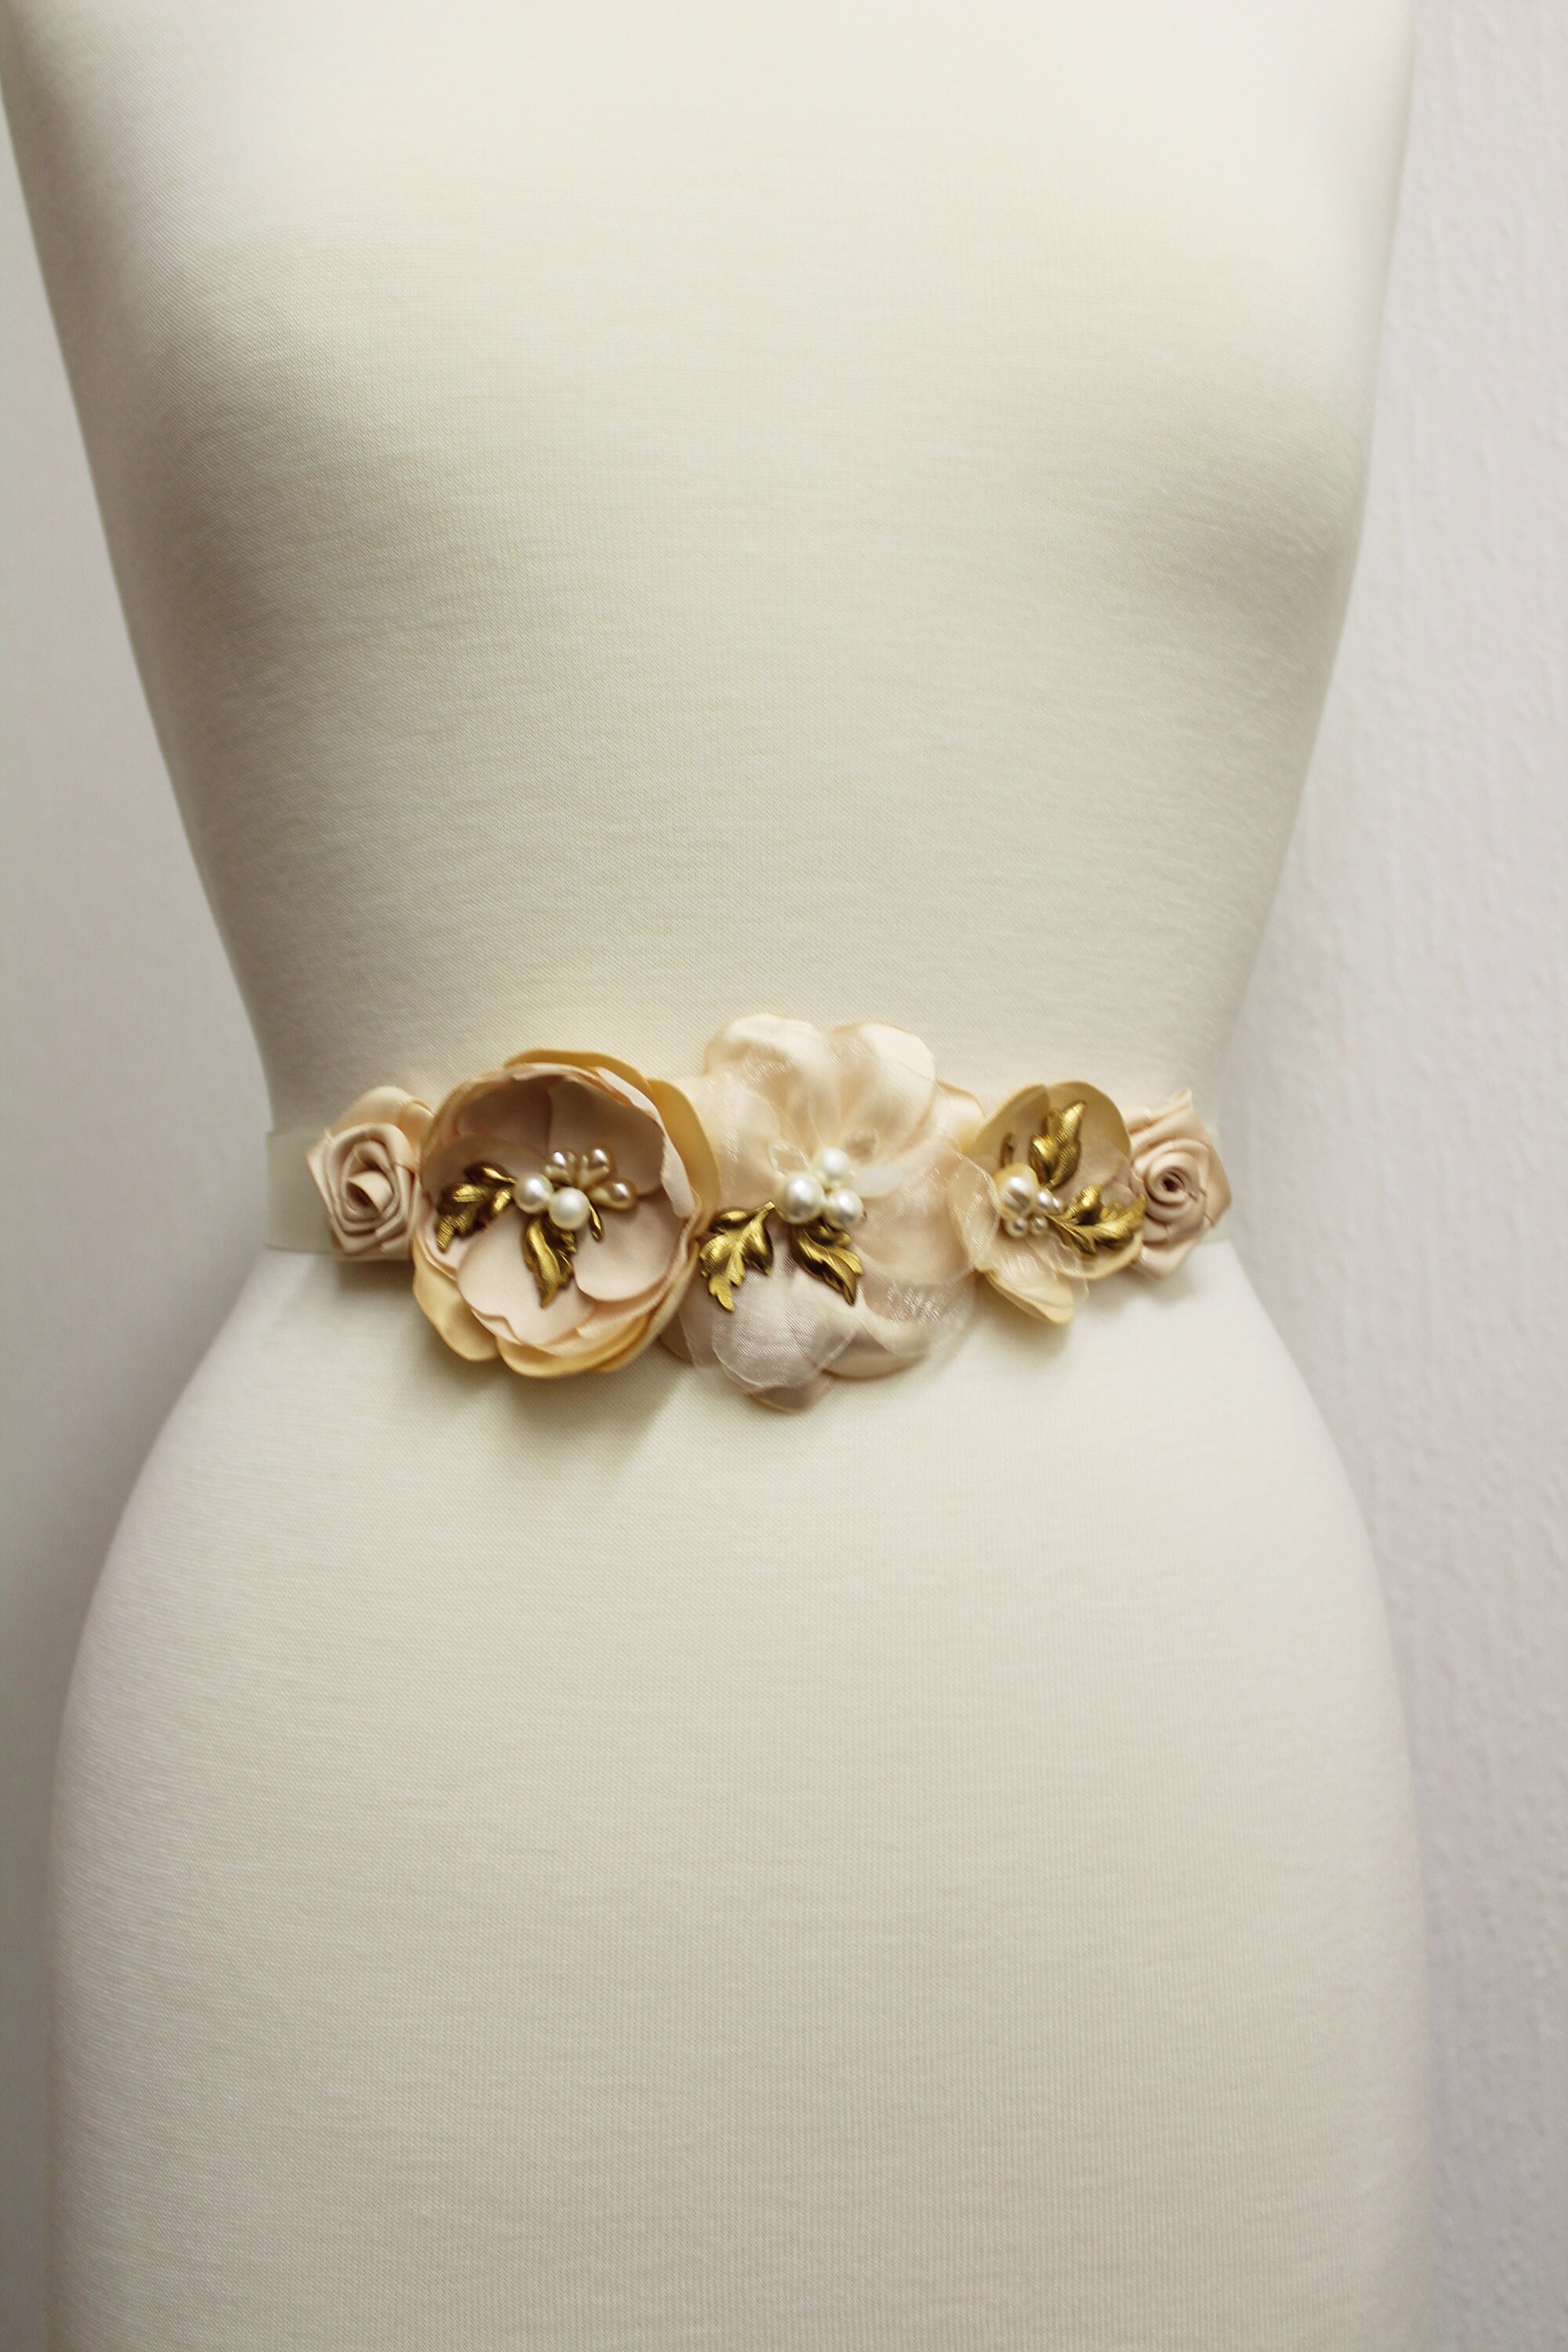 Champagne Bridal Belt Wedding Dress Sash With Flowers Navy - Etsy UK